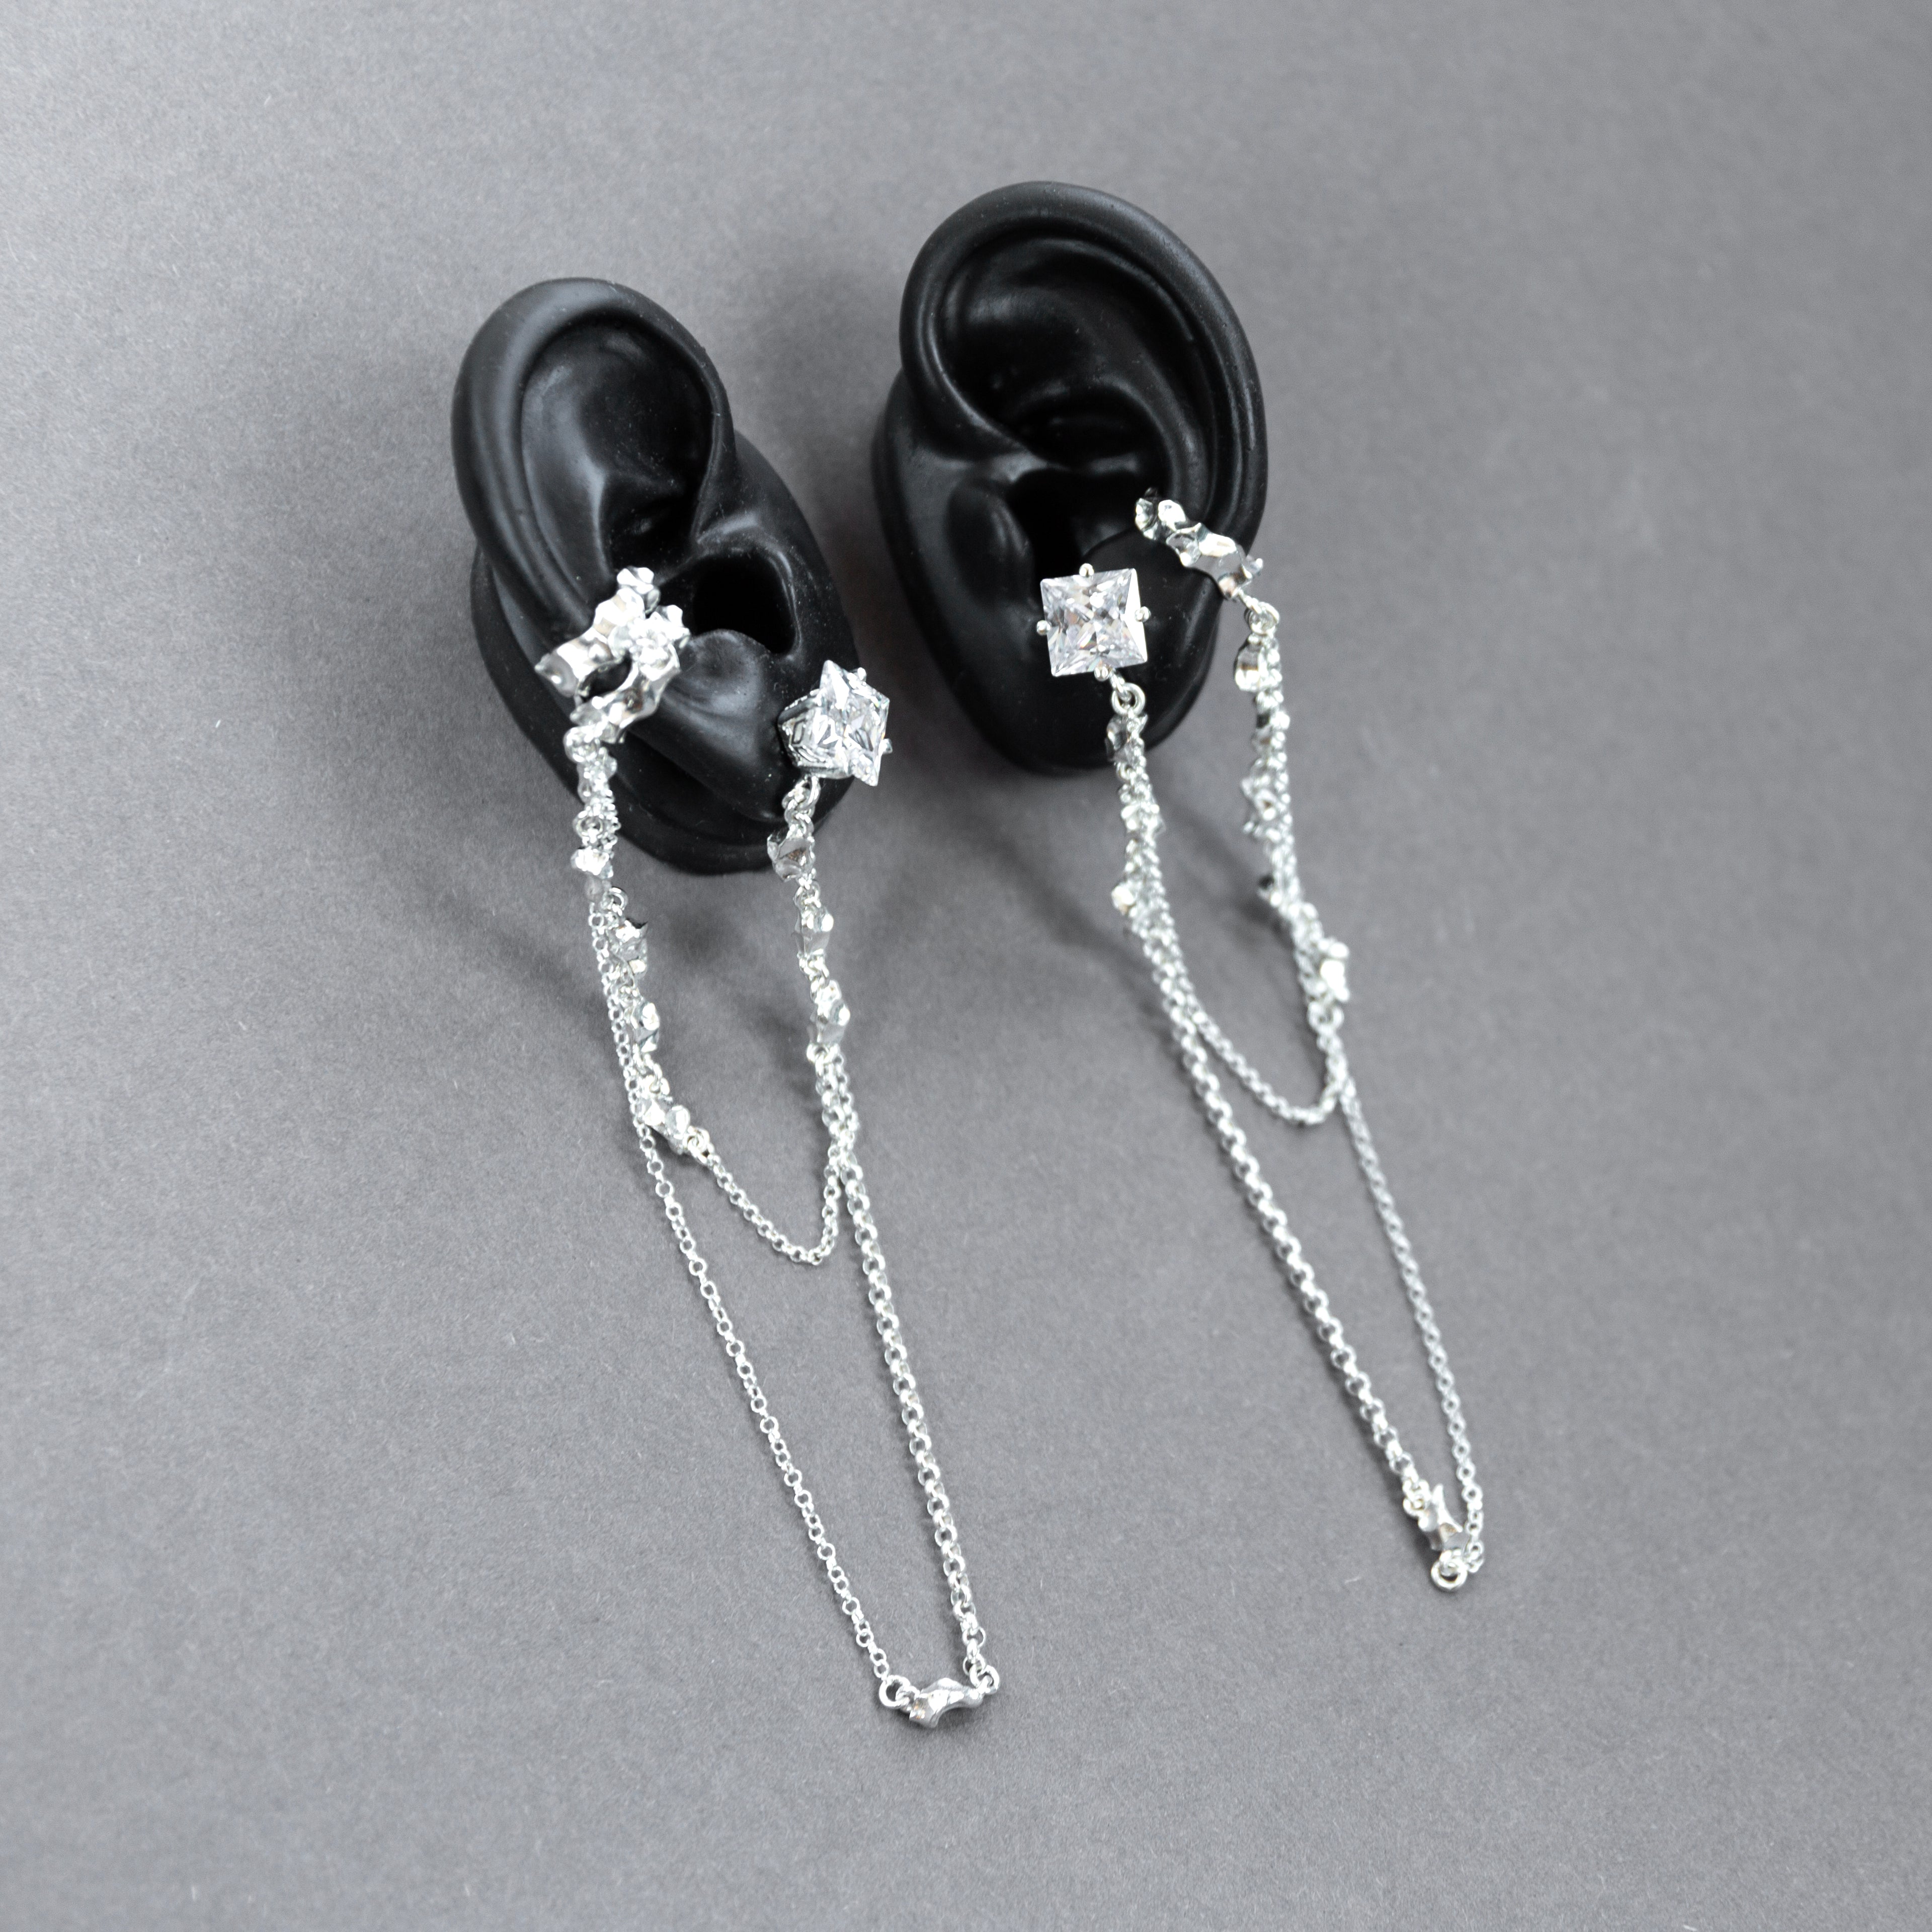 Rhisom ✦ silver earring